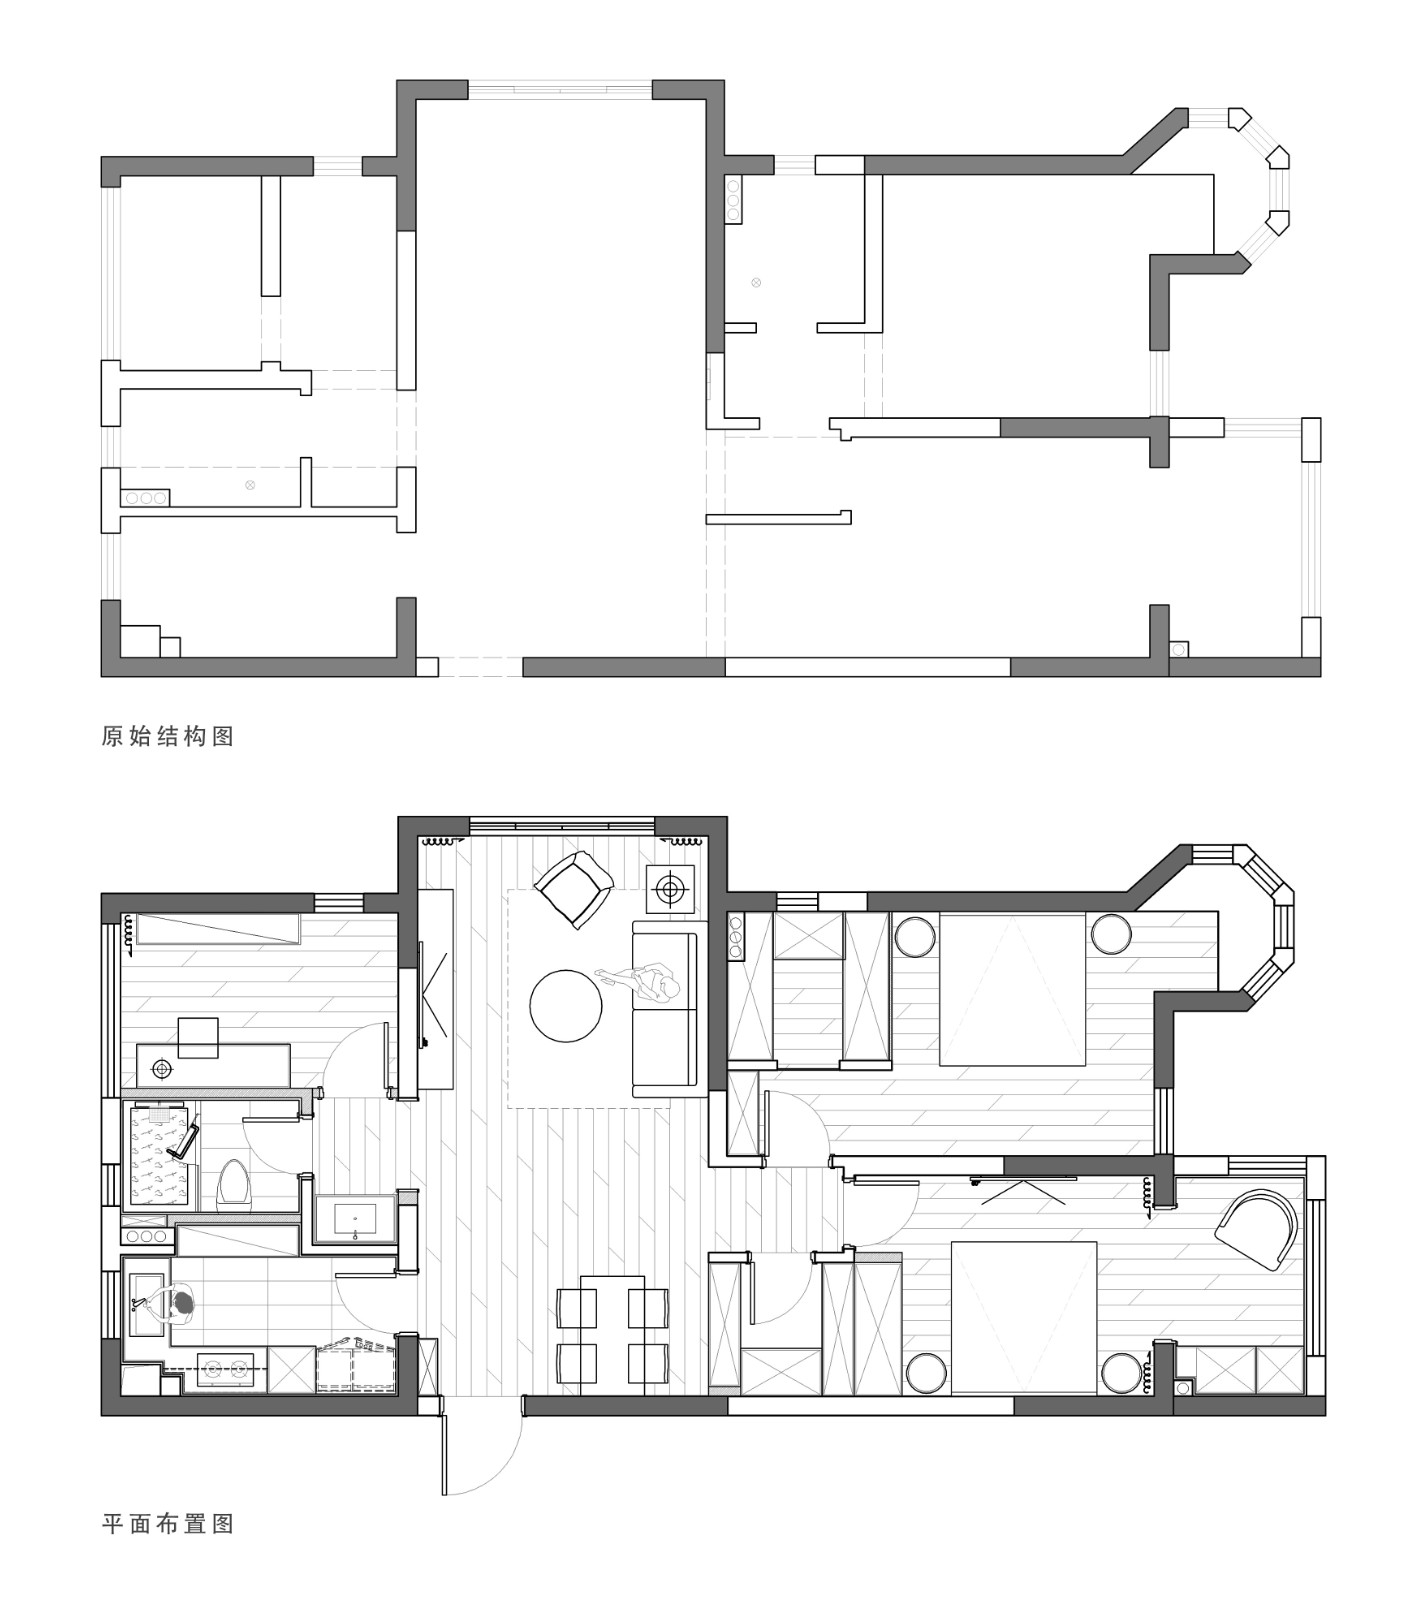 119现代三房装修效果图,119m²宁静生活装修案例效果图-美广网